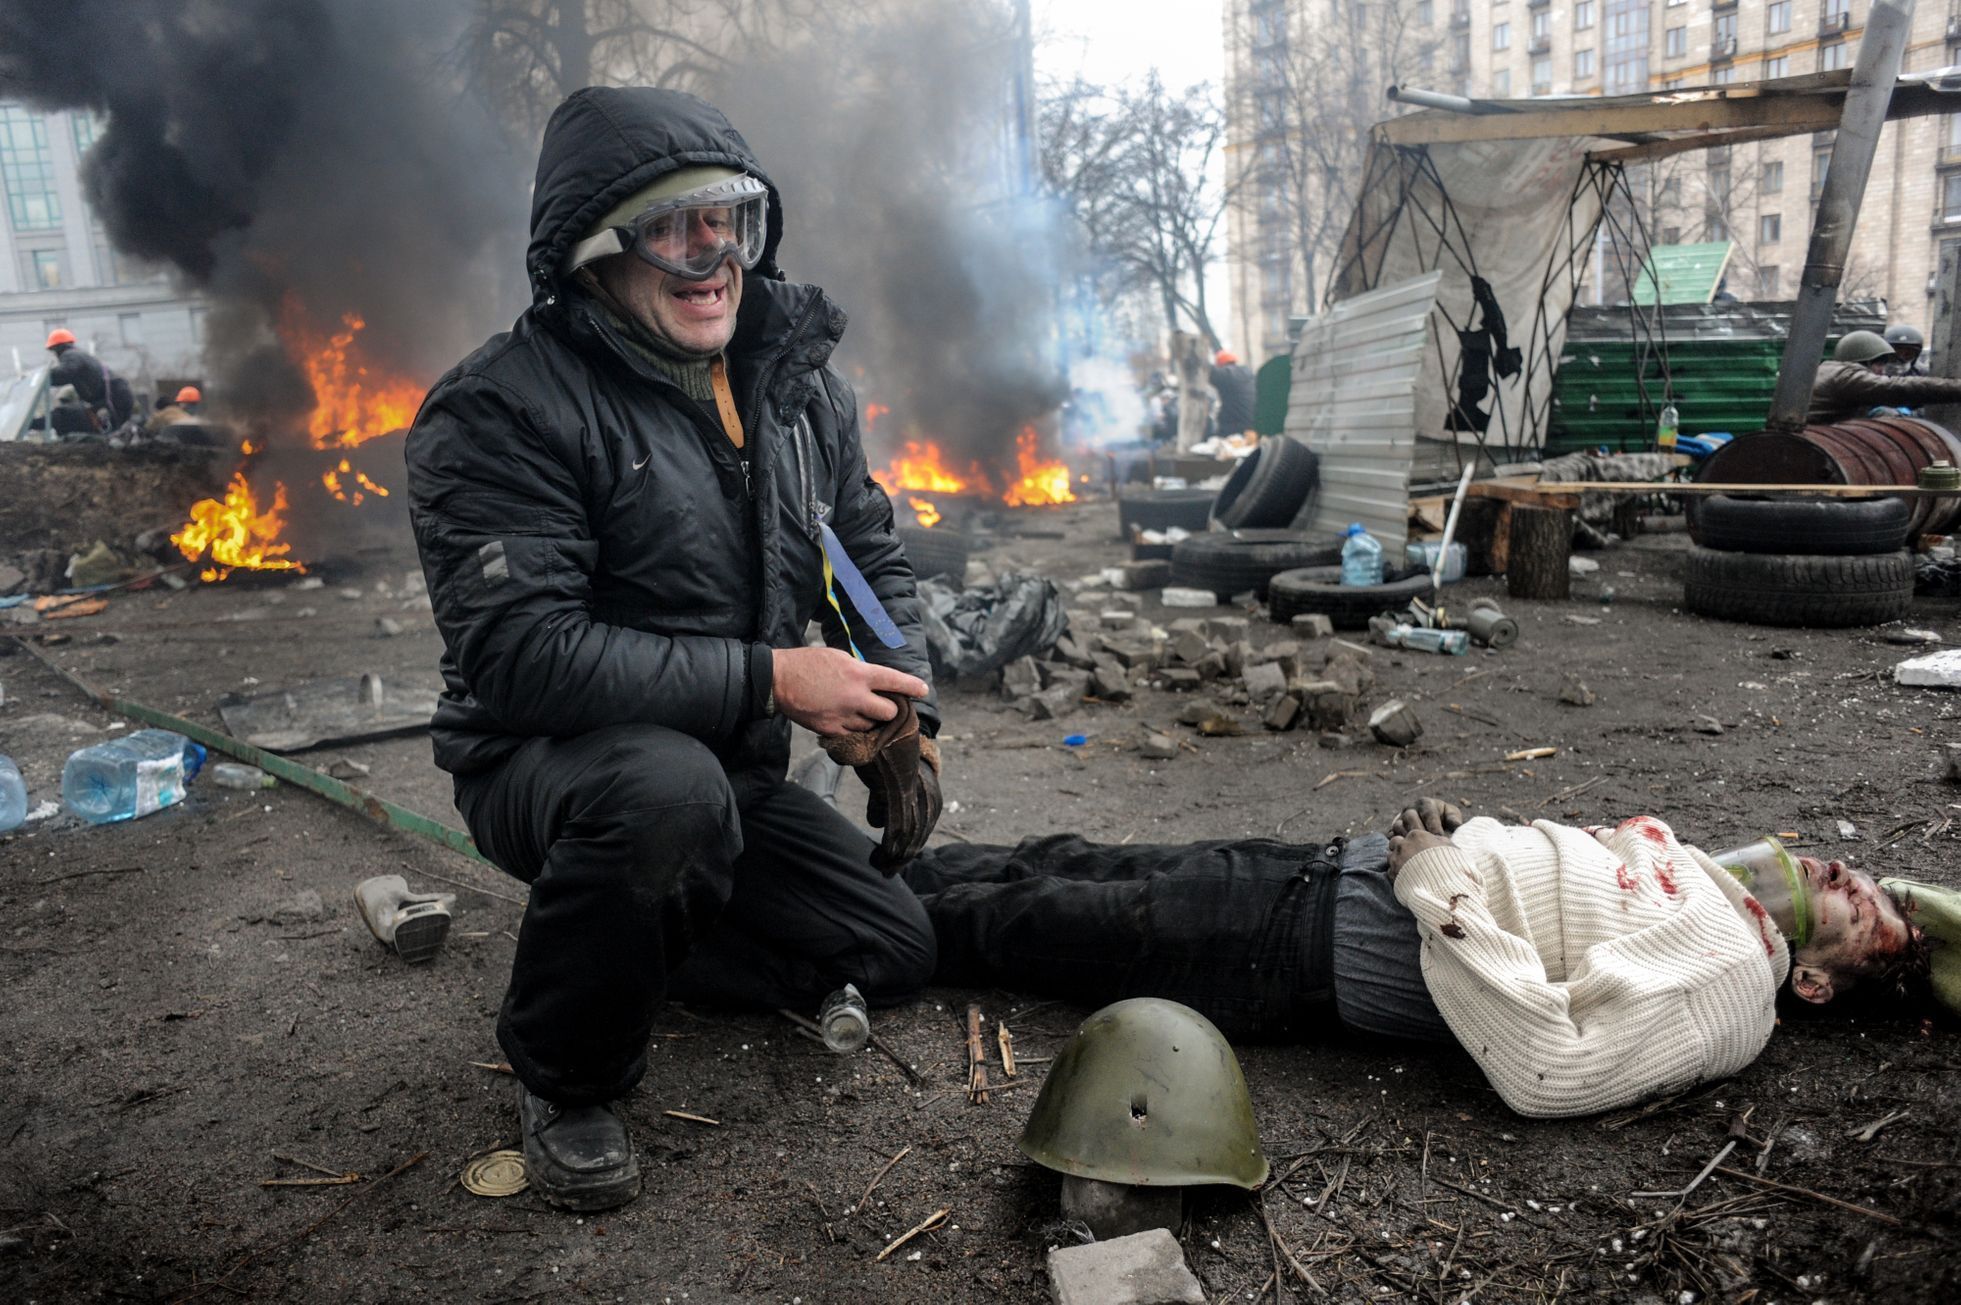 Pláč nad jedné z obětí masakru na kyjevském Majdanu 20.2.2014.